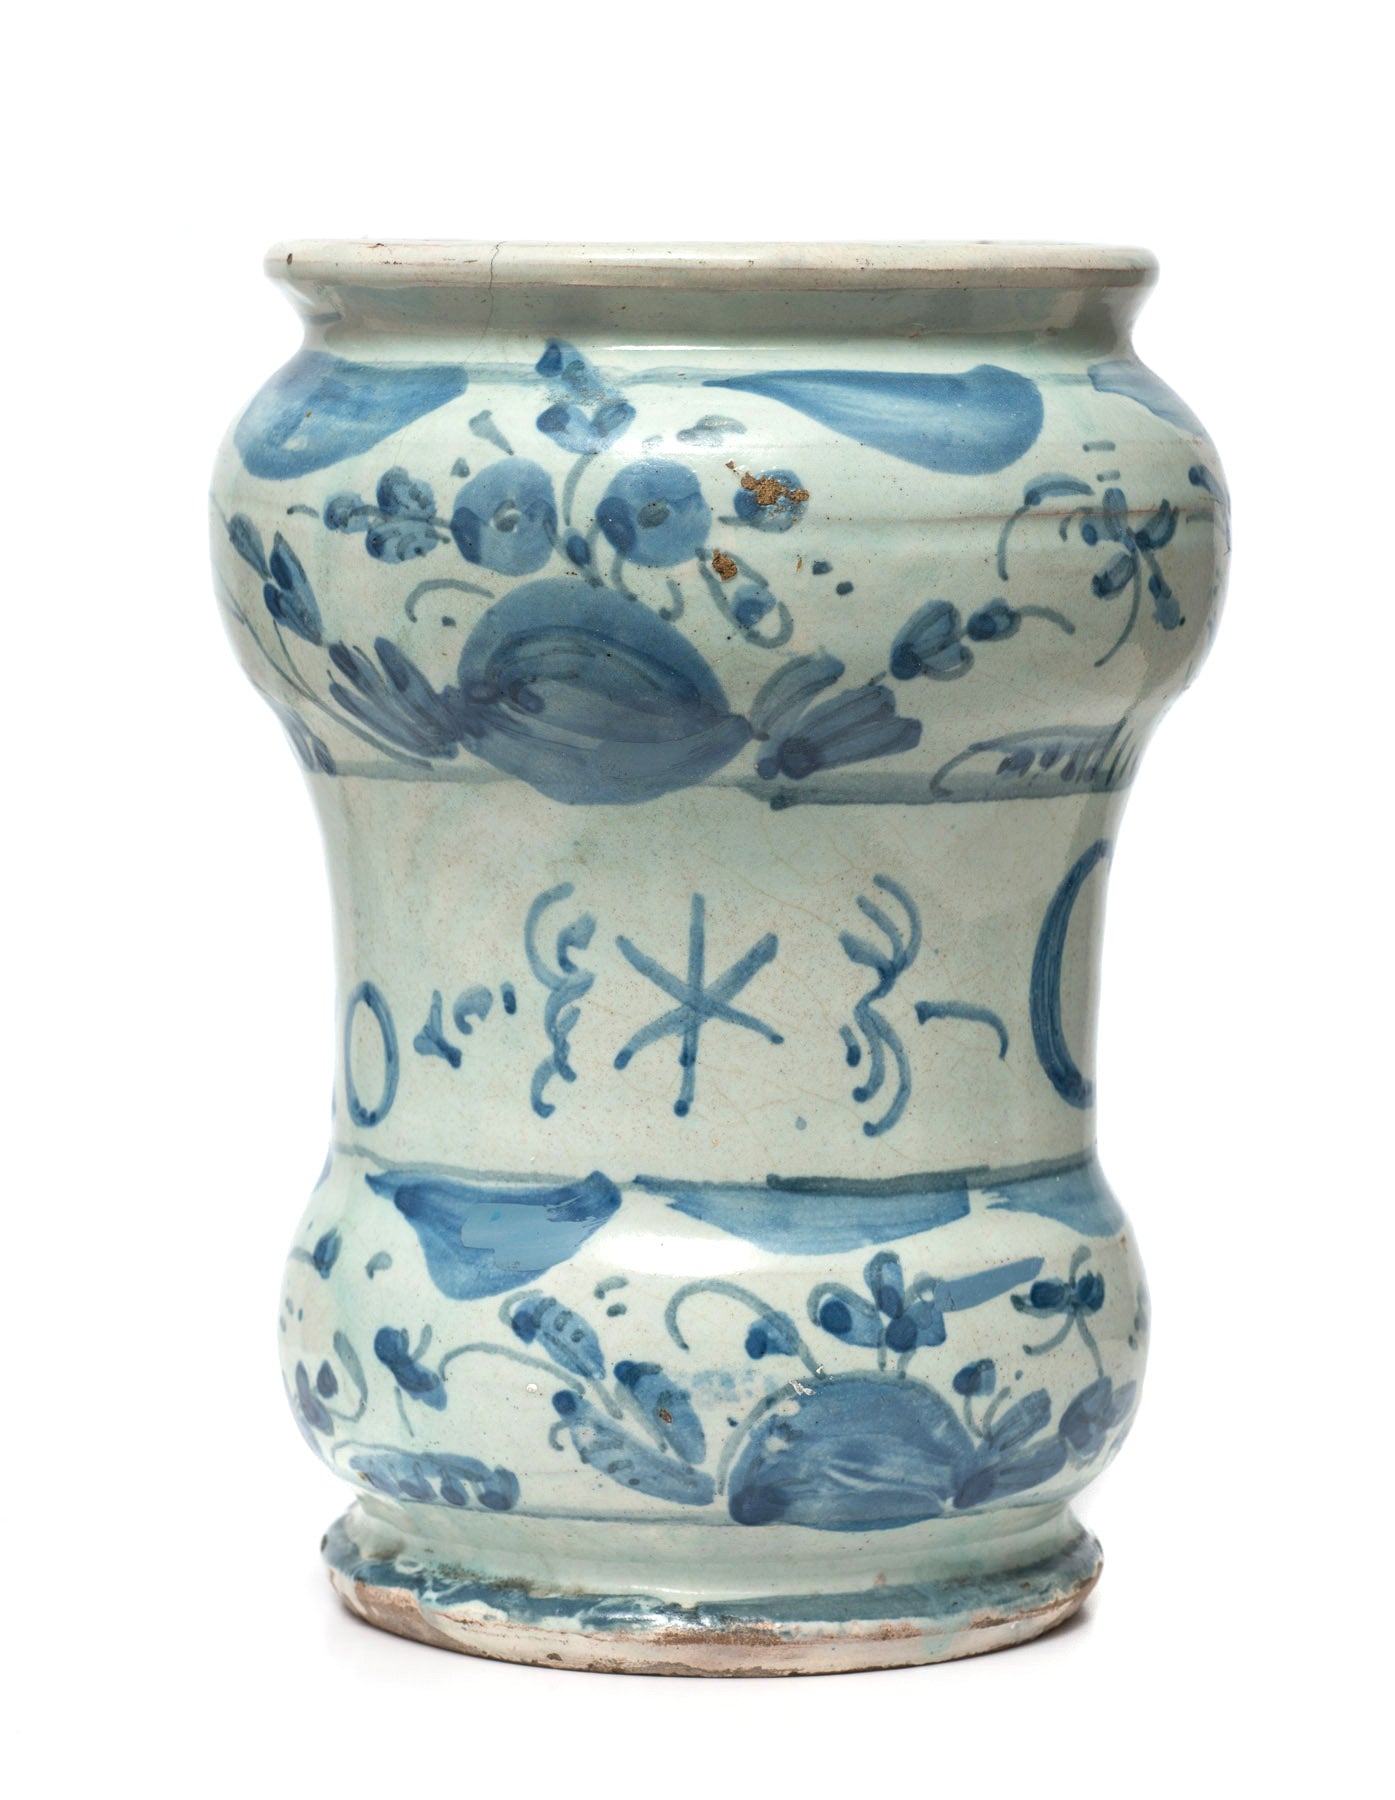 Antique Savona Italian Maiolica Pottery Albarello Drug Jar for Cardo Santo c1720 (Code 0836)